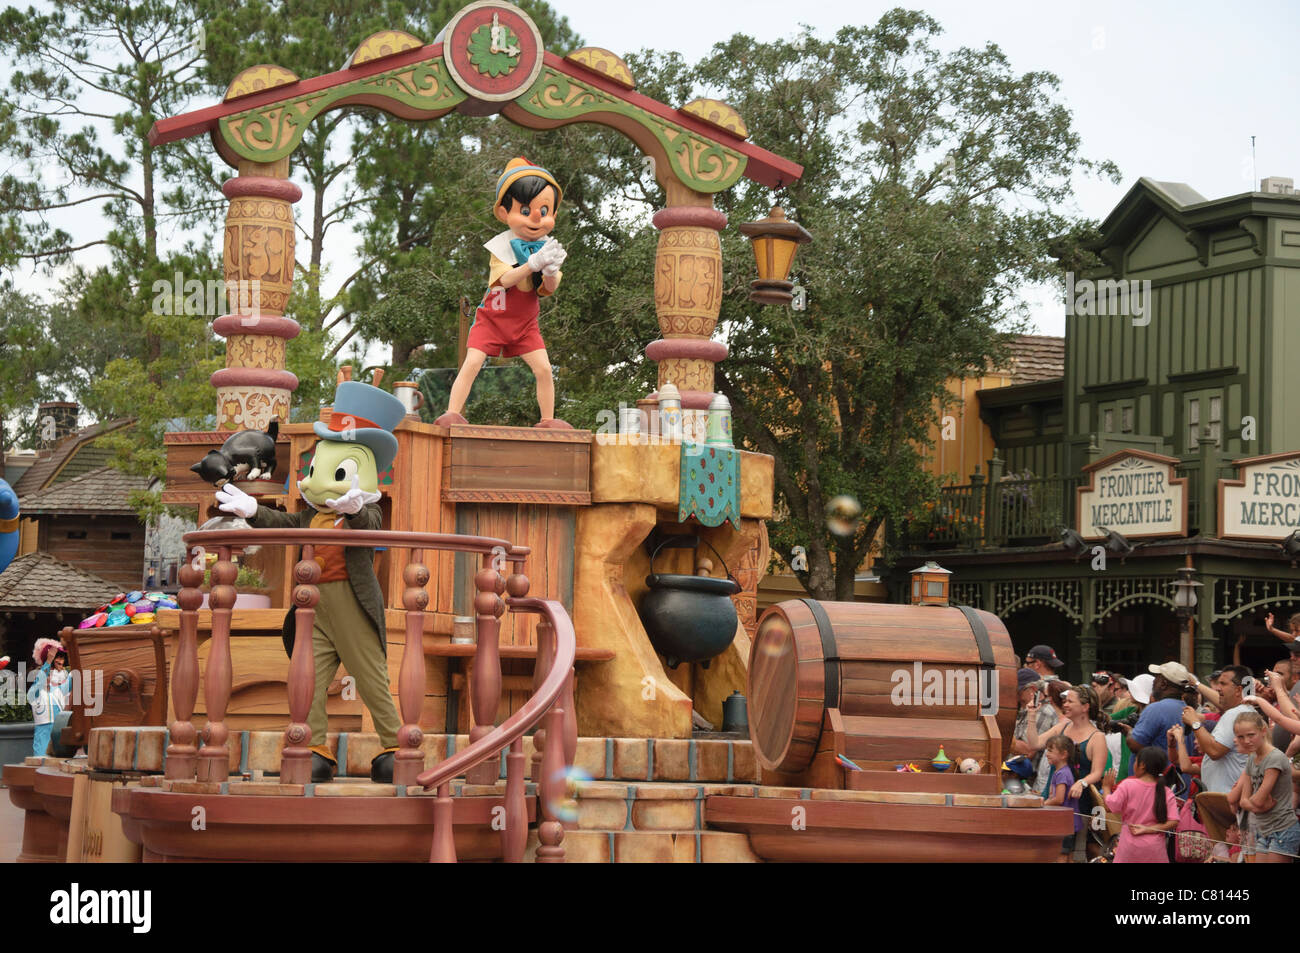 Le royaume magique célébrer un rêve viennent vrai Pinocchio parade float Banque D'Images